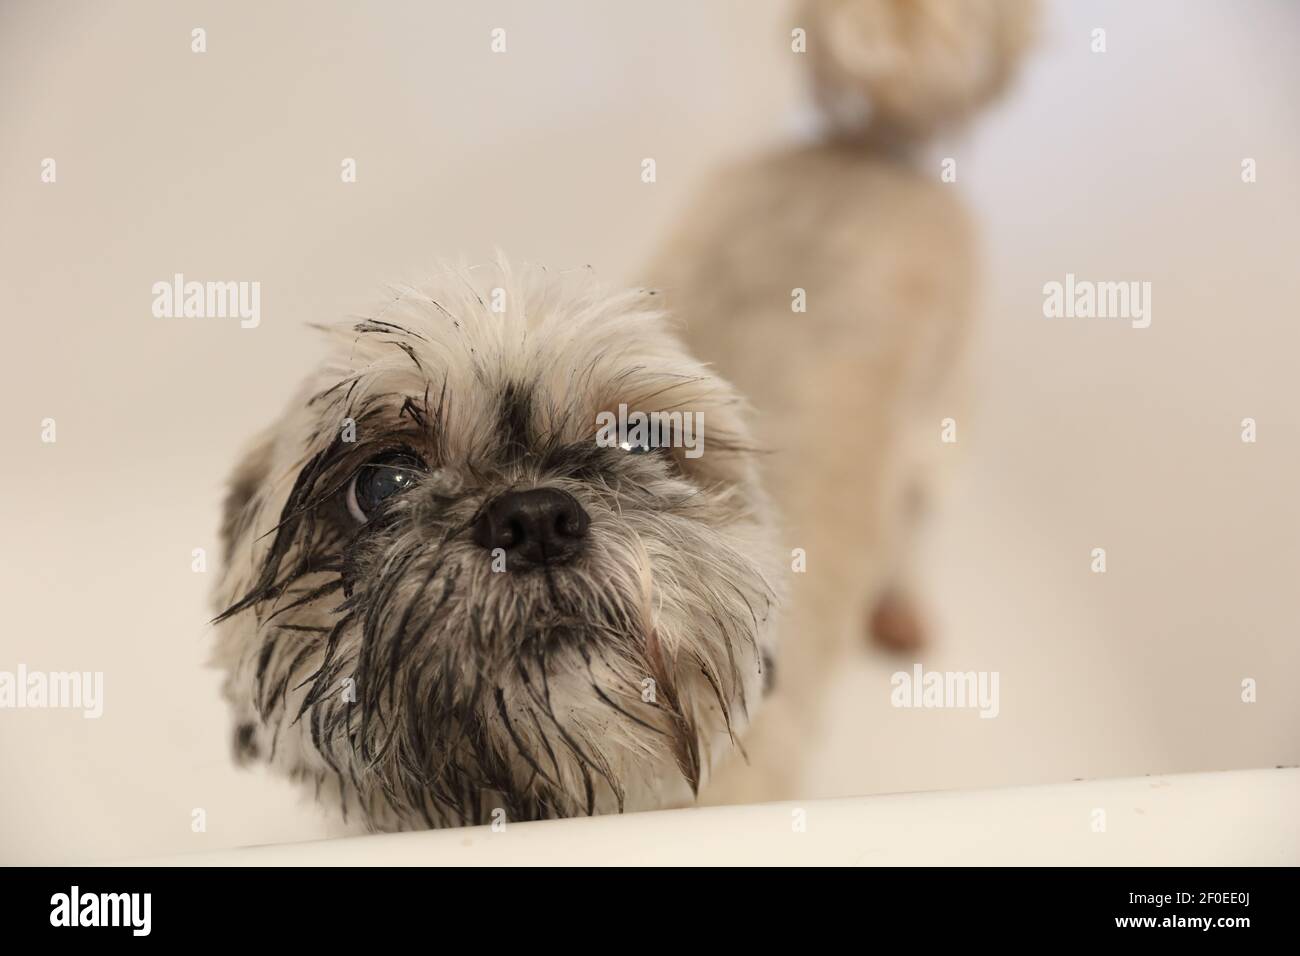 Retrato de un perro mojado de pie en la bañera con una cara fangosa. Foto de stock